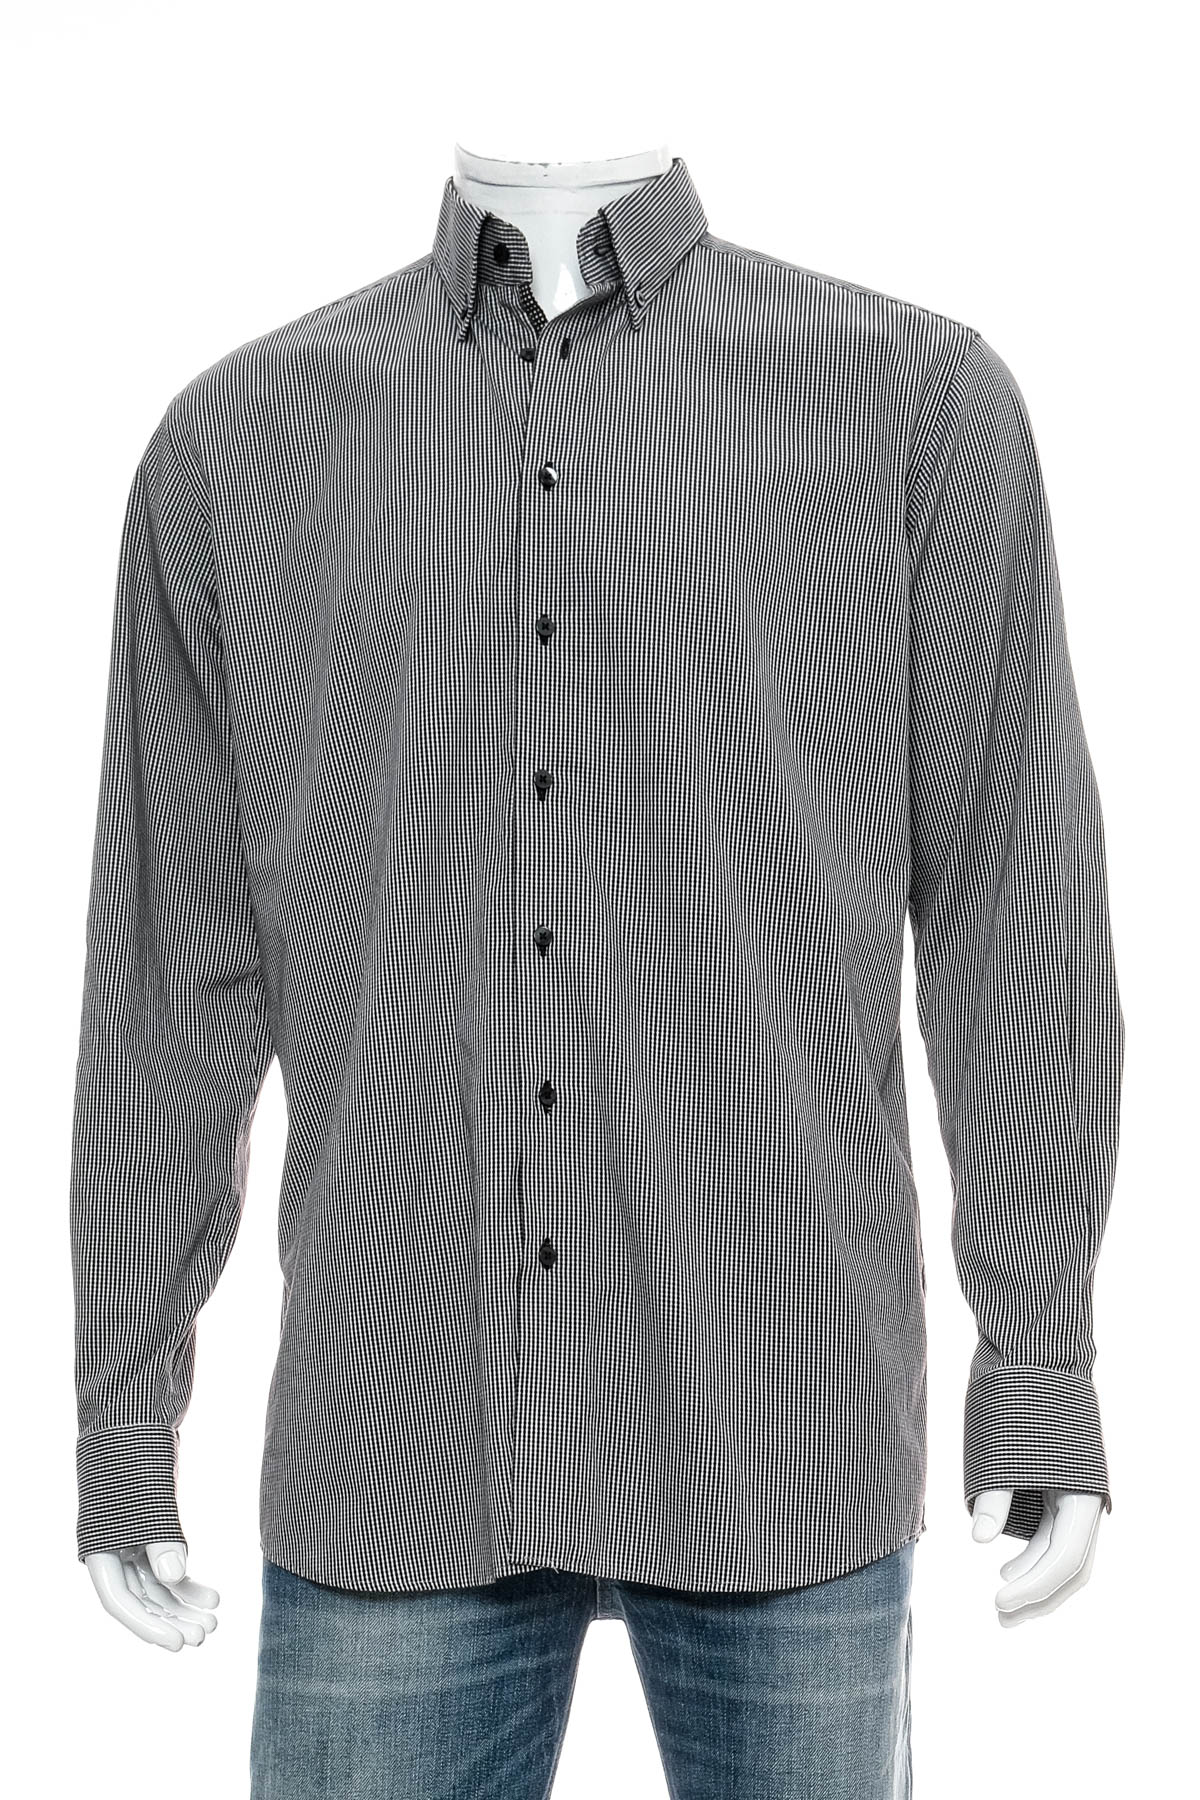 Ανδρικό πουκάμισο - Eterna - 0